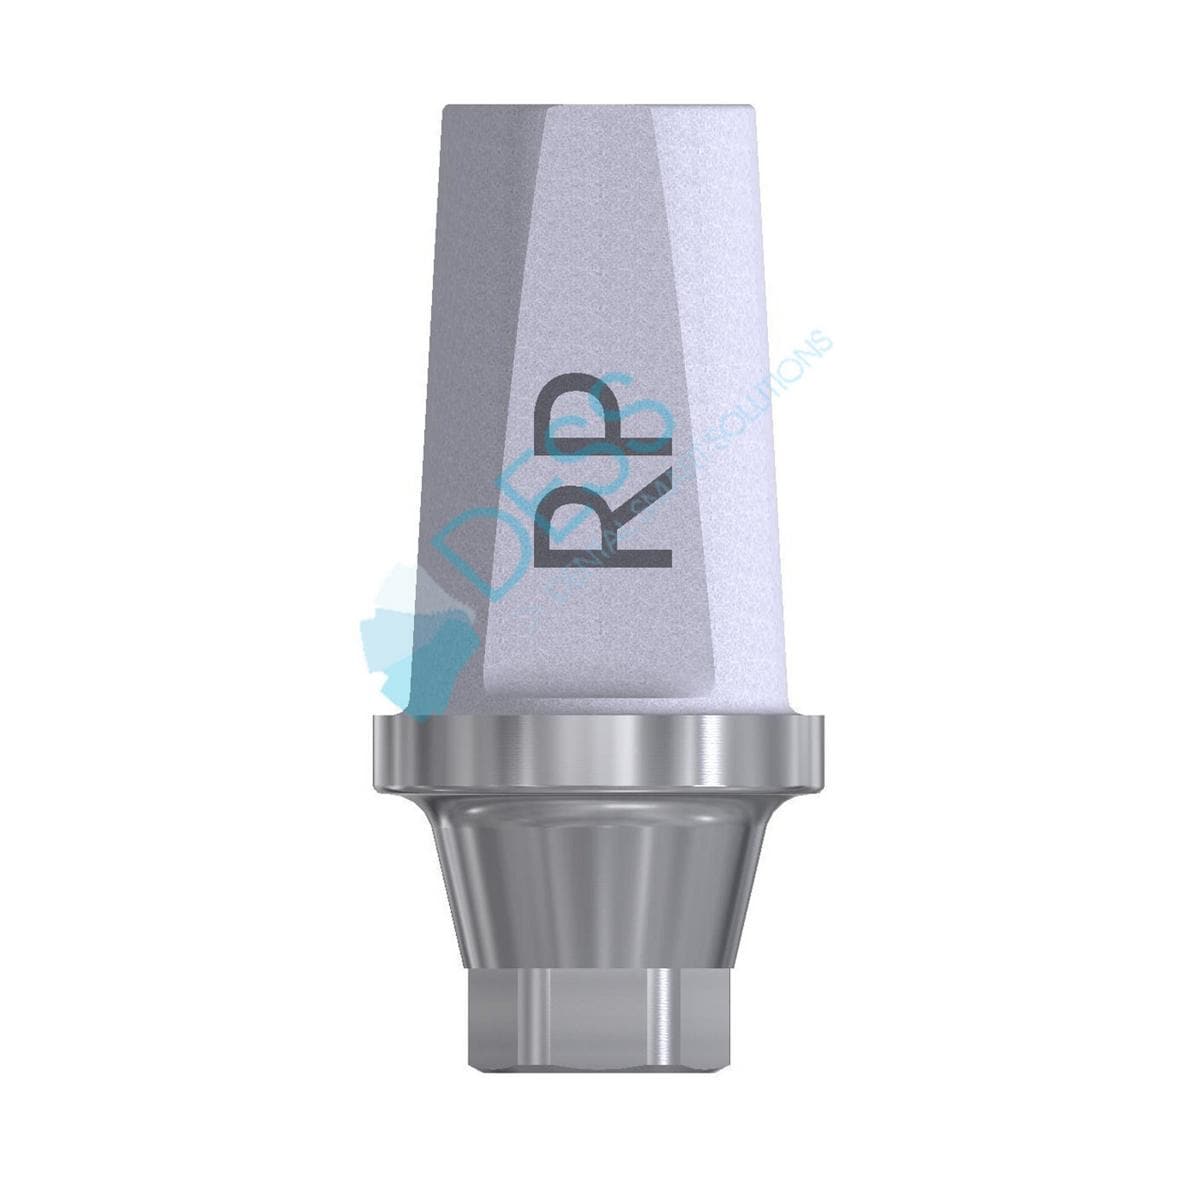 Titanabutment - kompatibel mit Nobel Active™ / Nobel Replace® CC - RP Ø 4,3 mm, 0° gewinkelt